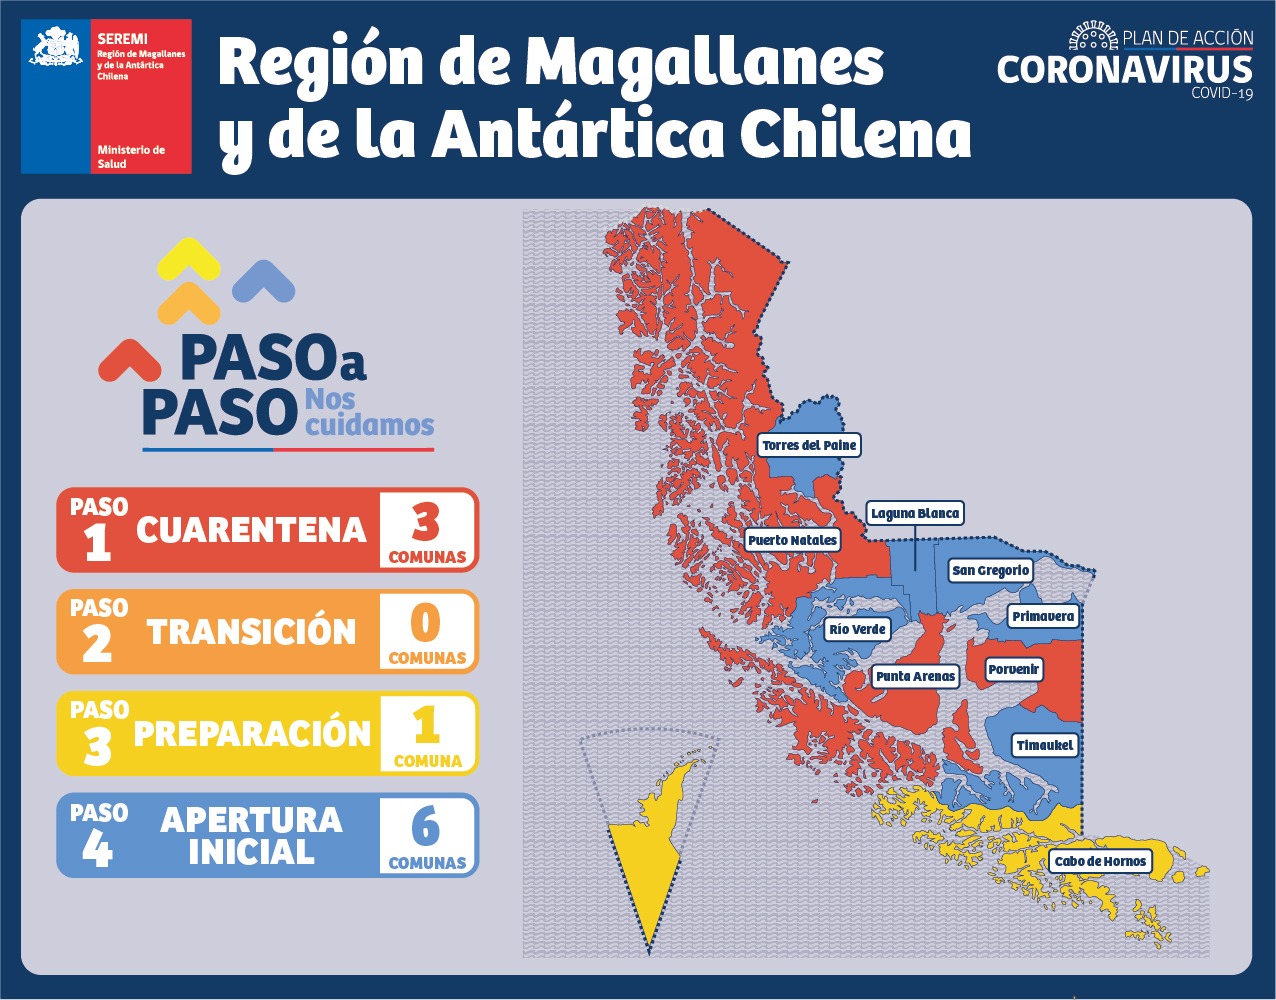 Informe Covid19 de SEREMI de Salud de la región de Magallanes, lunes 3 de mayo